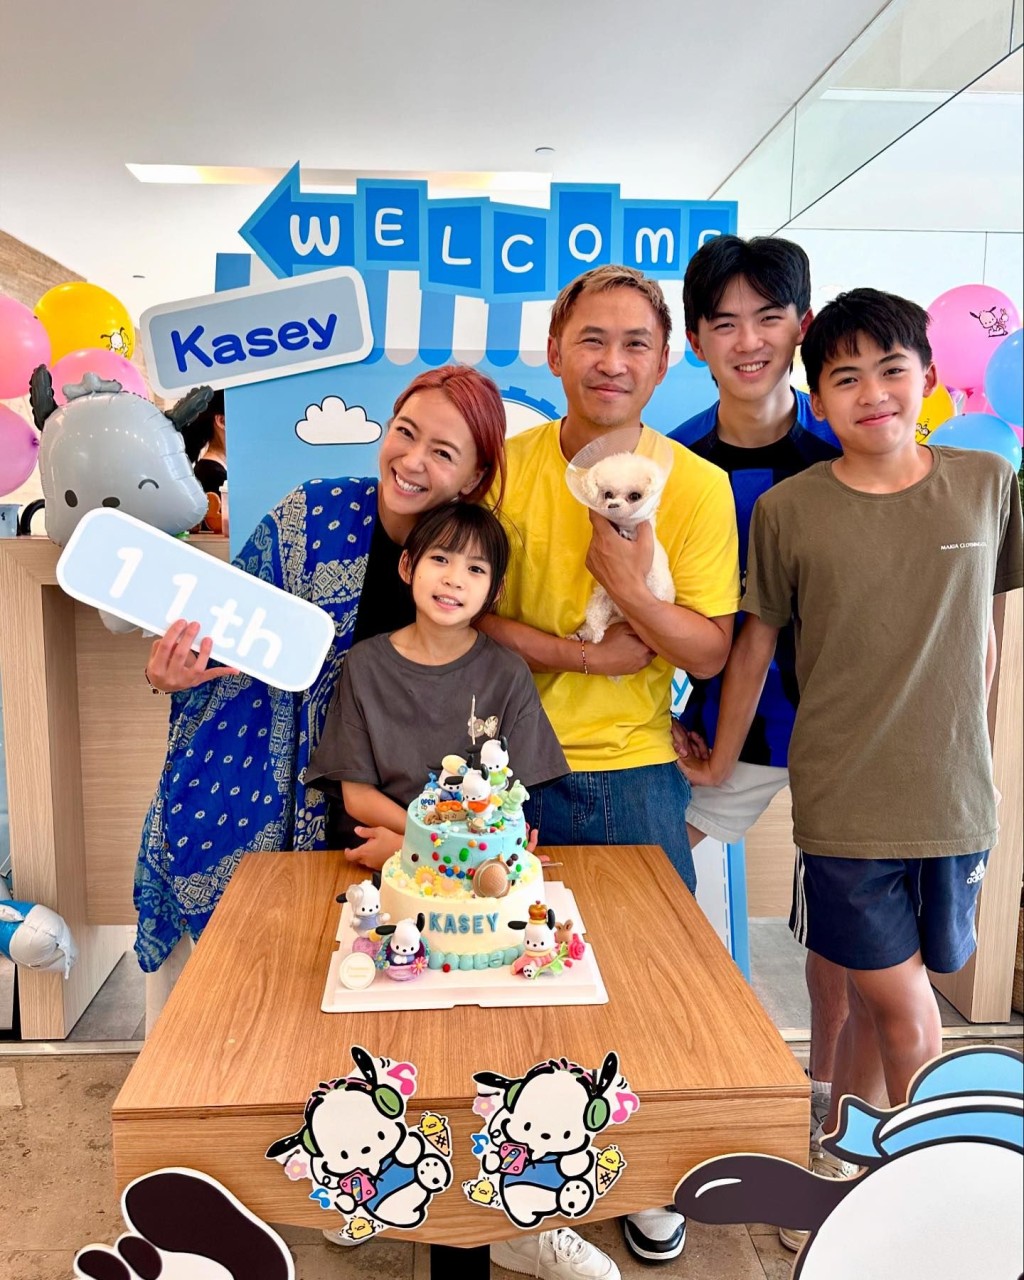 梁芷佩昨日（9日）在IG分享女儿Kasey的11岁生日会。